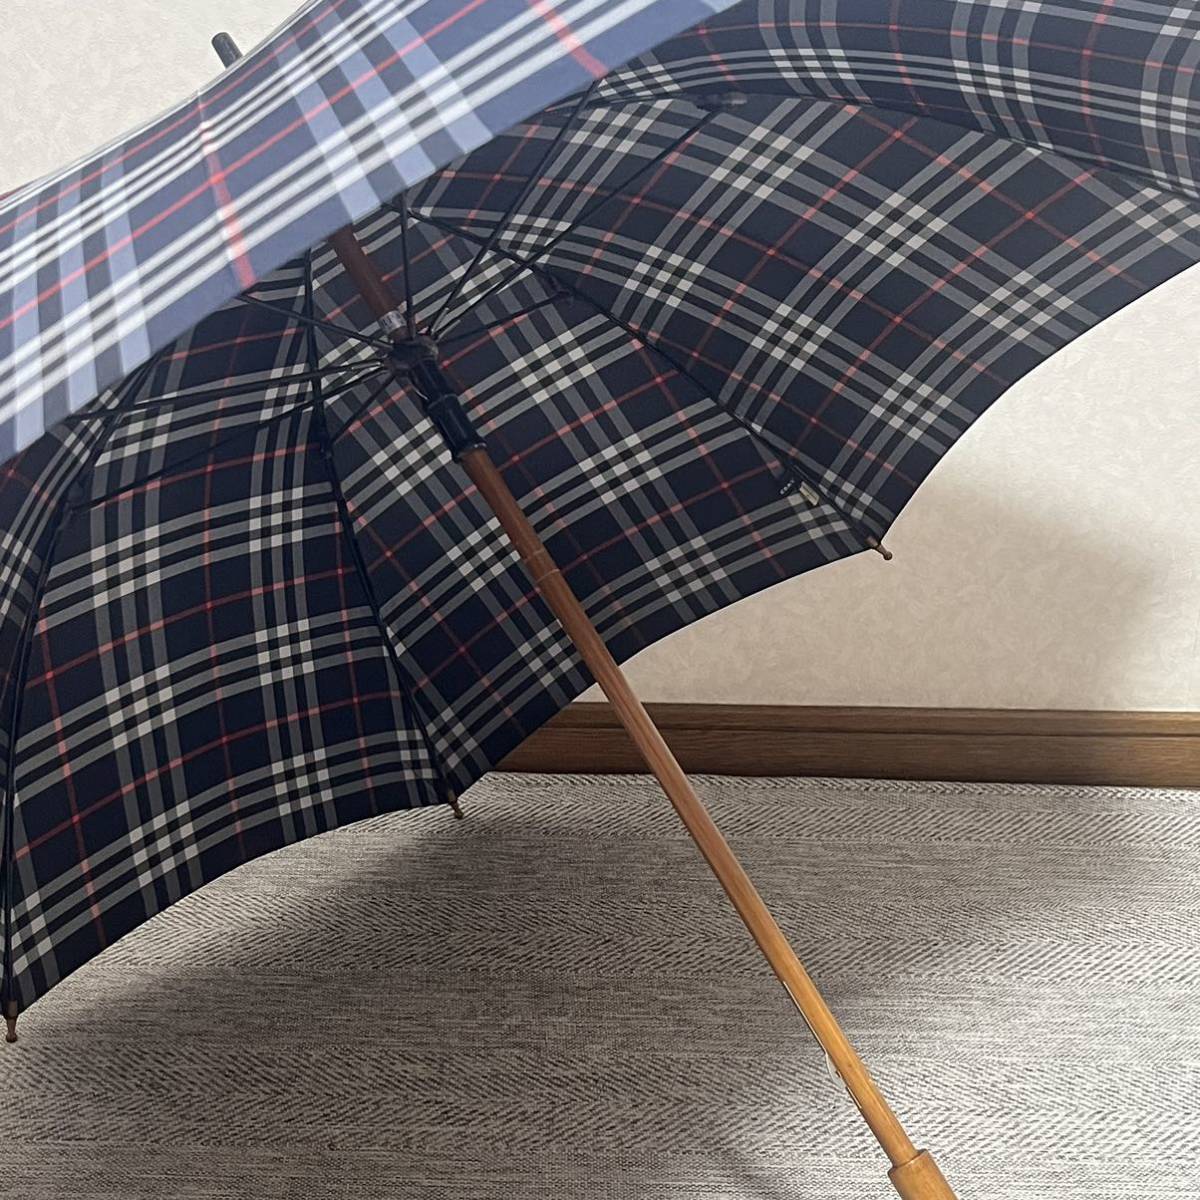 BURBERRY Burberry noba проверка чёрный темно-синий из дерева umbrella длинный зонт 1 шт зонт для мужчин и женщин 